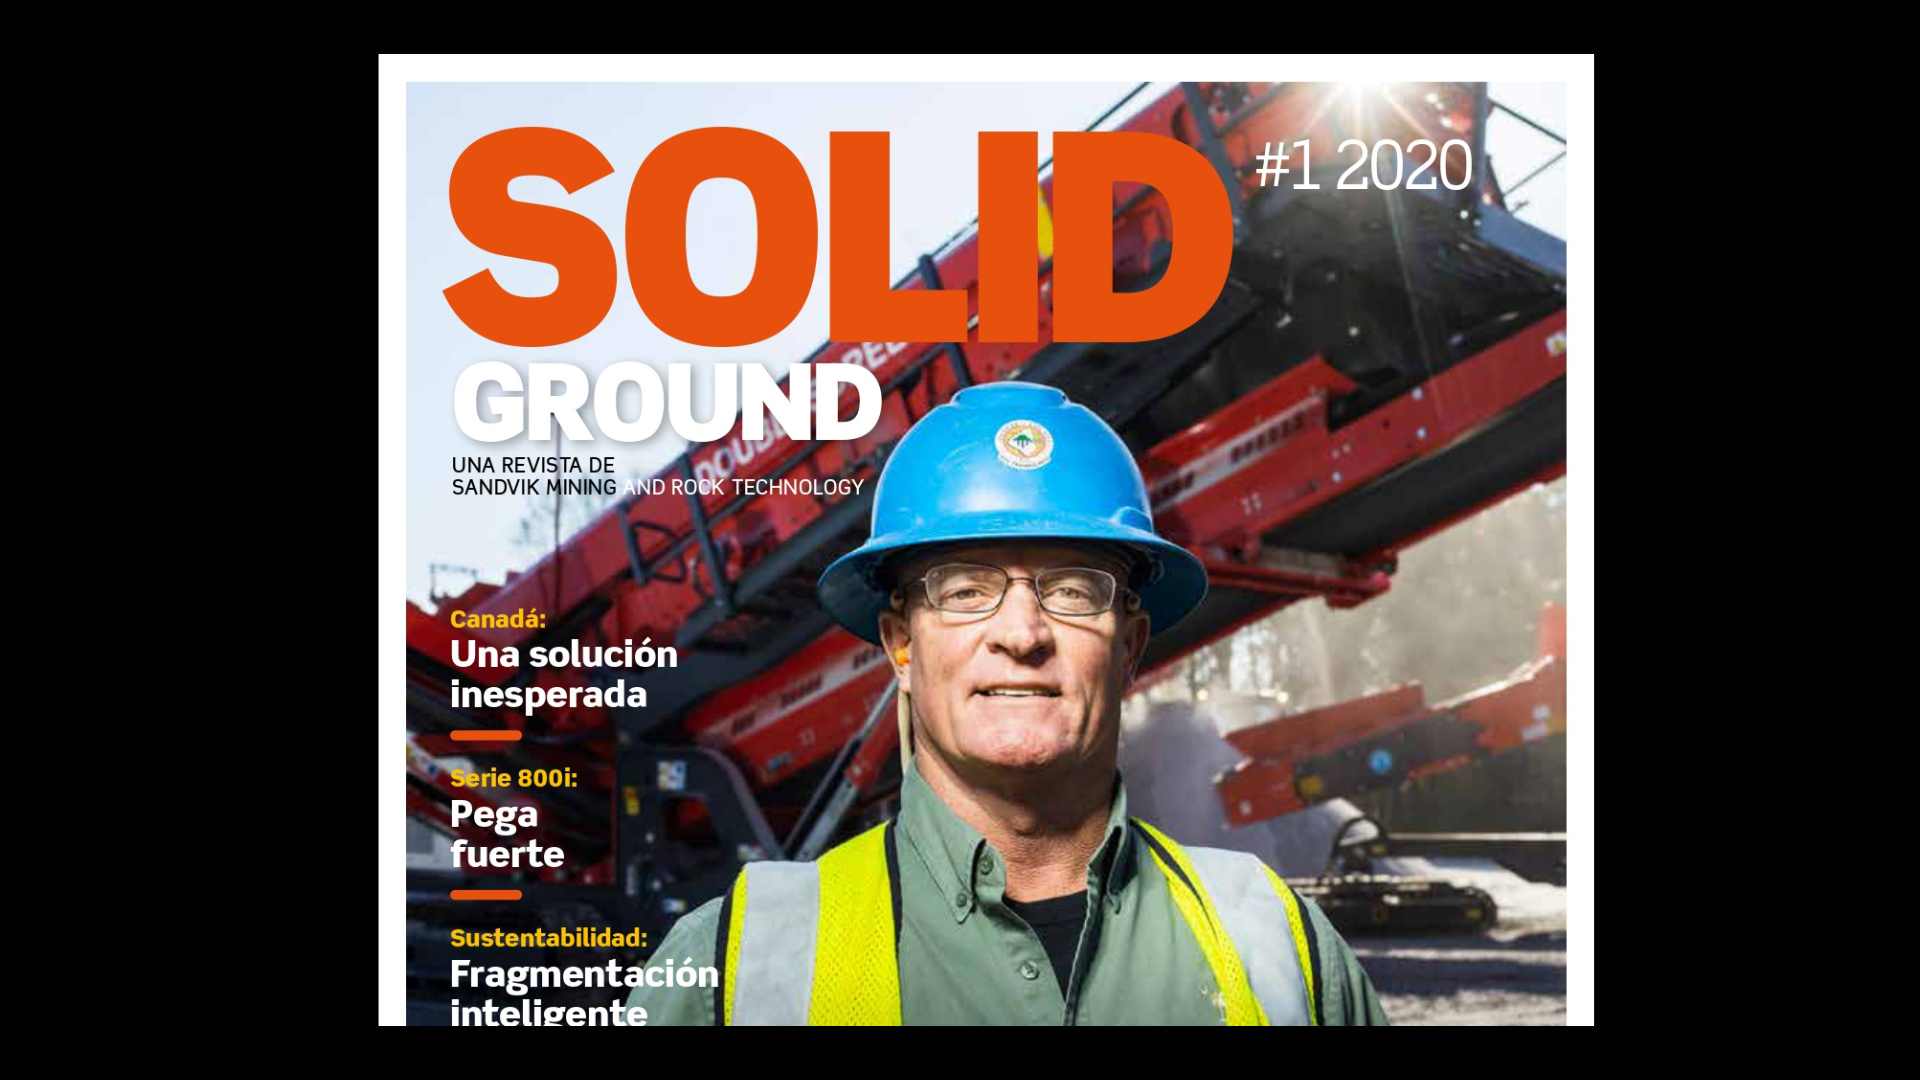 Revista Solid Ground #1 2020 Sandvik